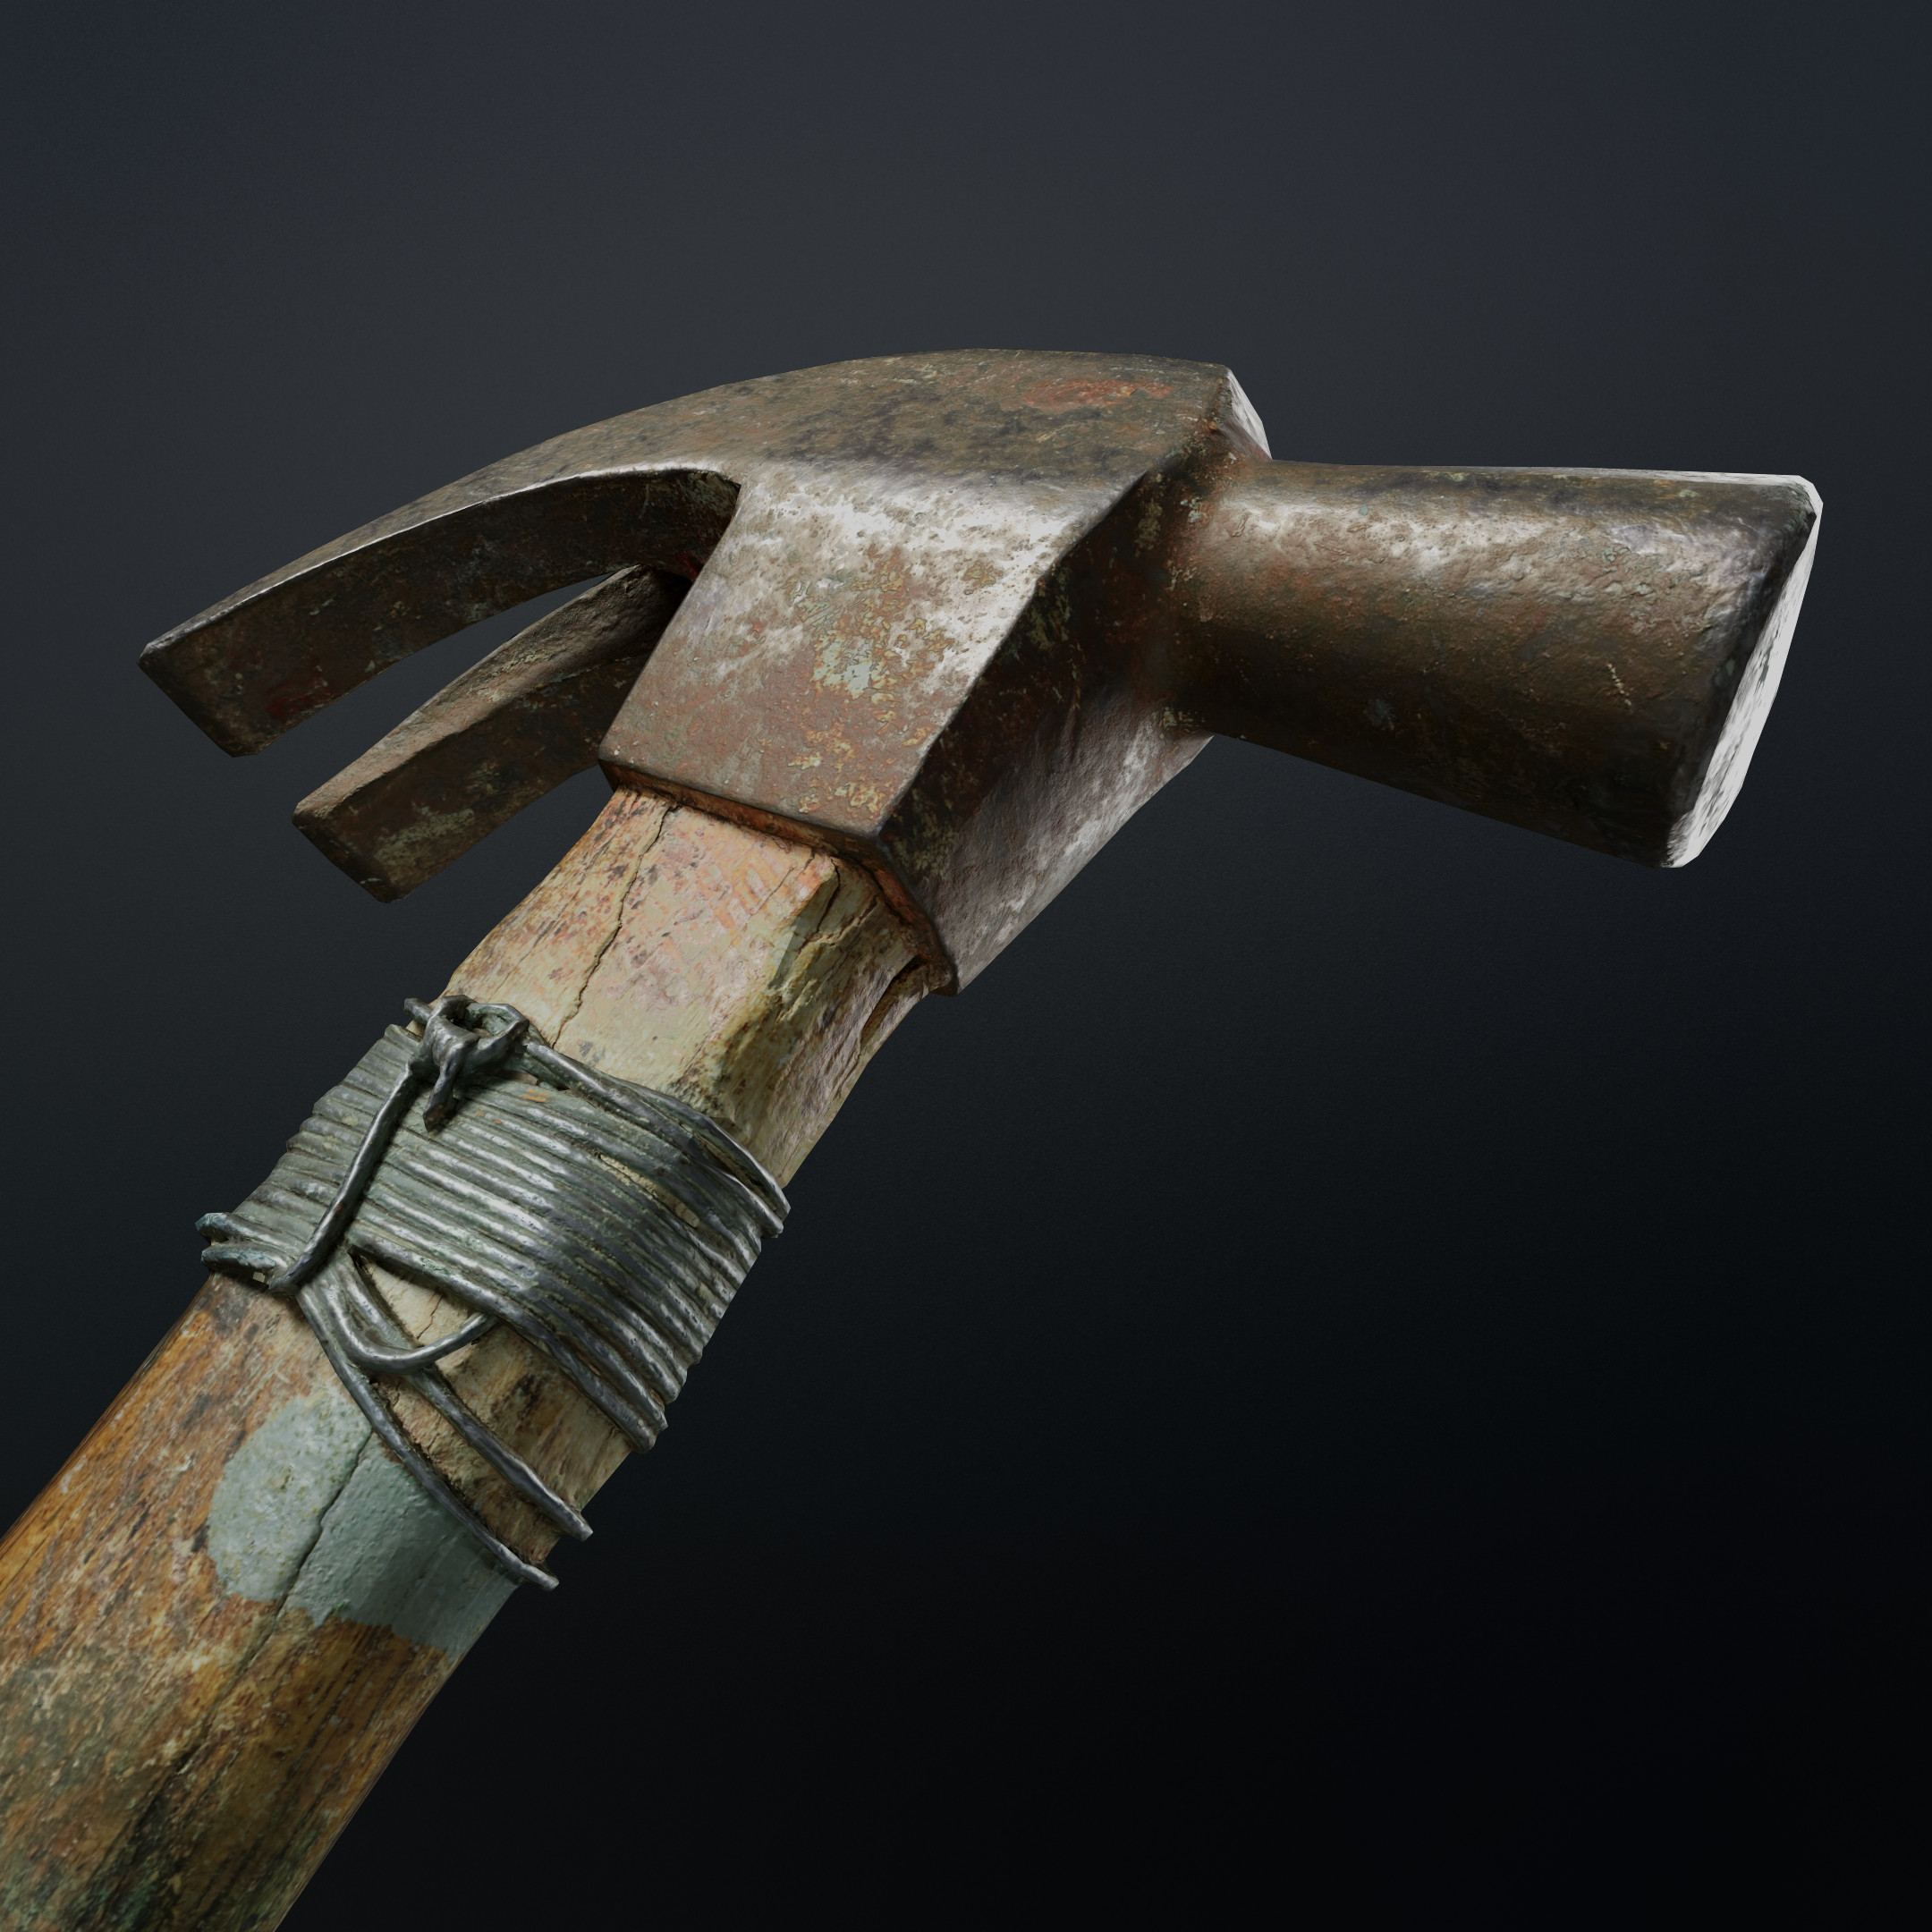 ArtStation - Old hammer